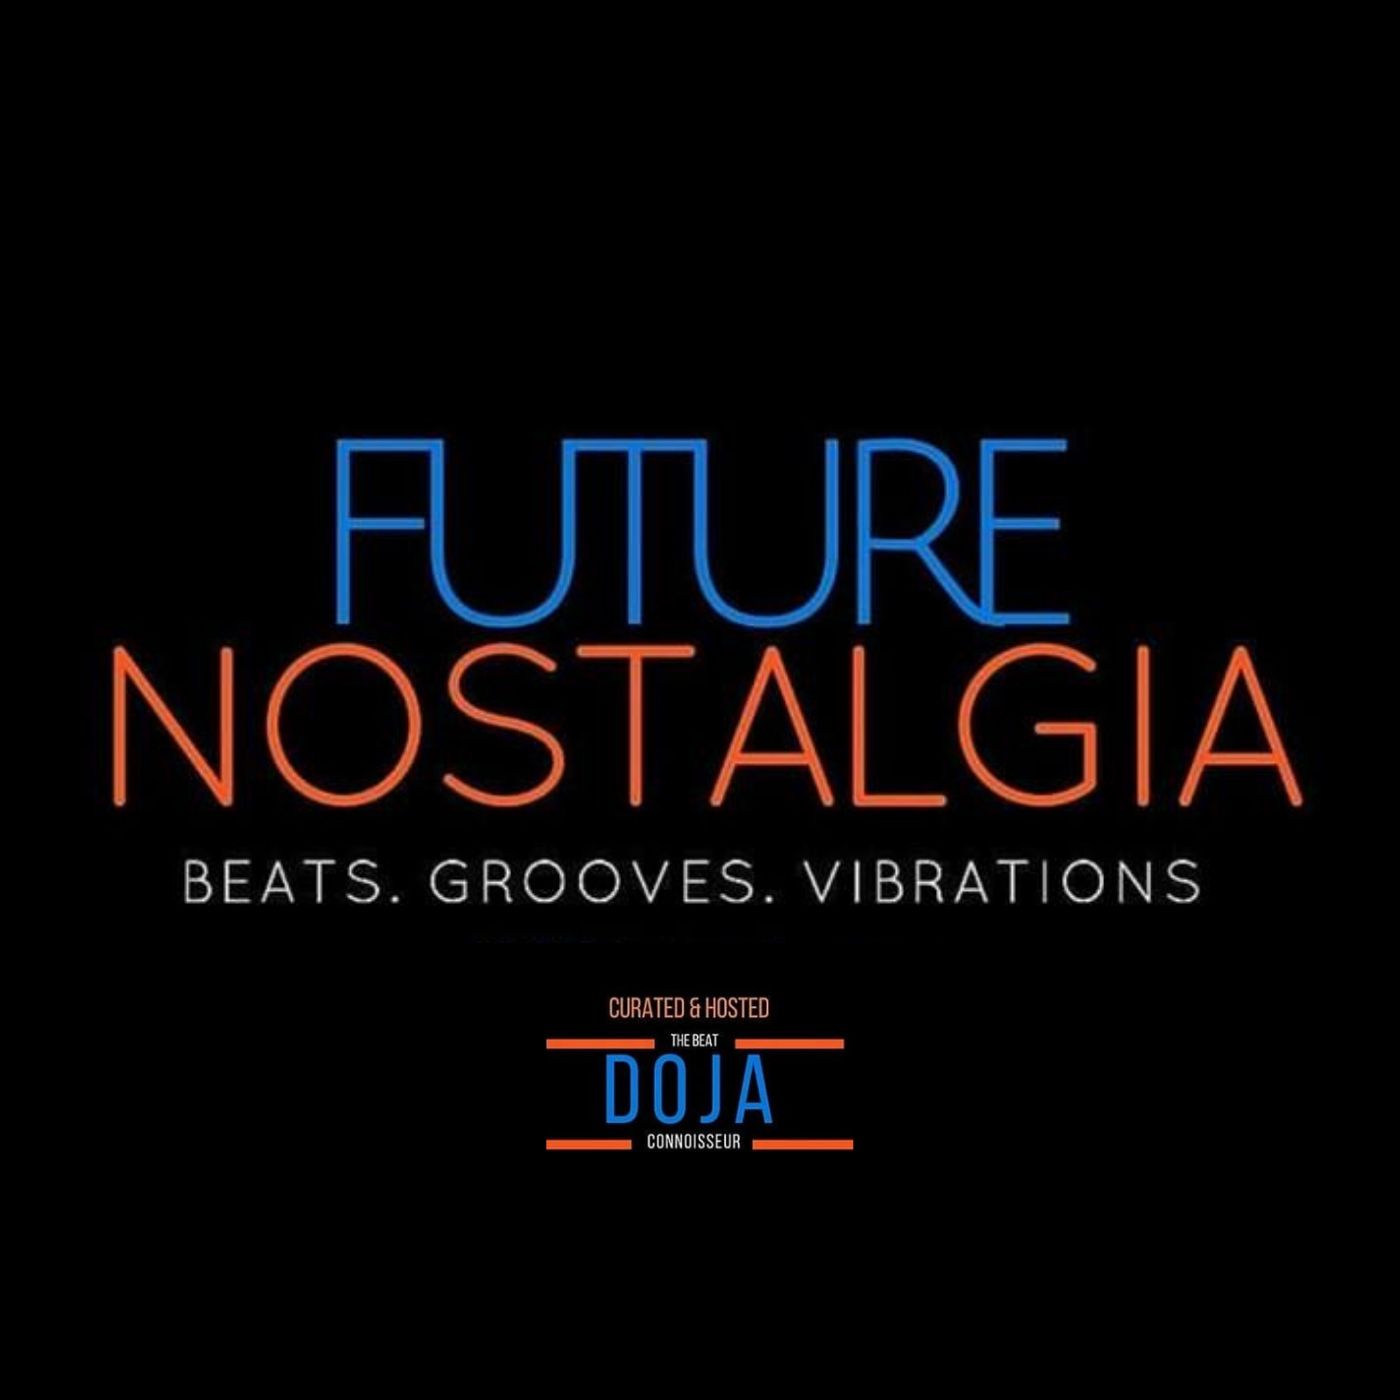 Future Nostalgia - The Excursion, Pt. 70 (@dojabeatconnoisseur_ode)